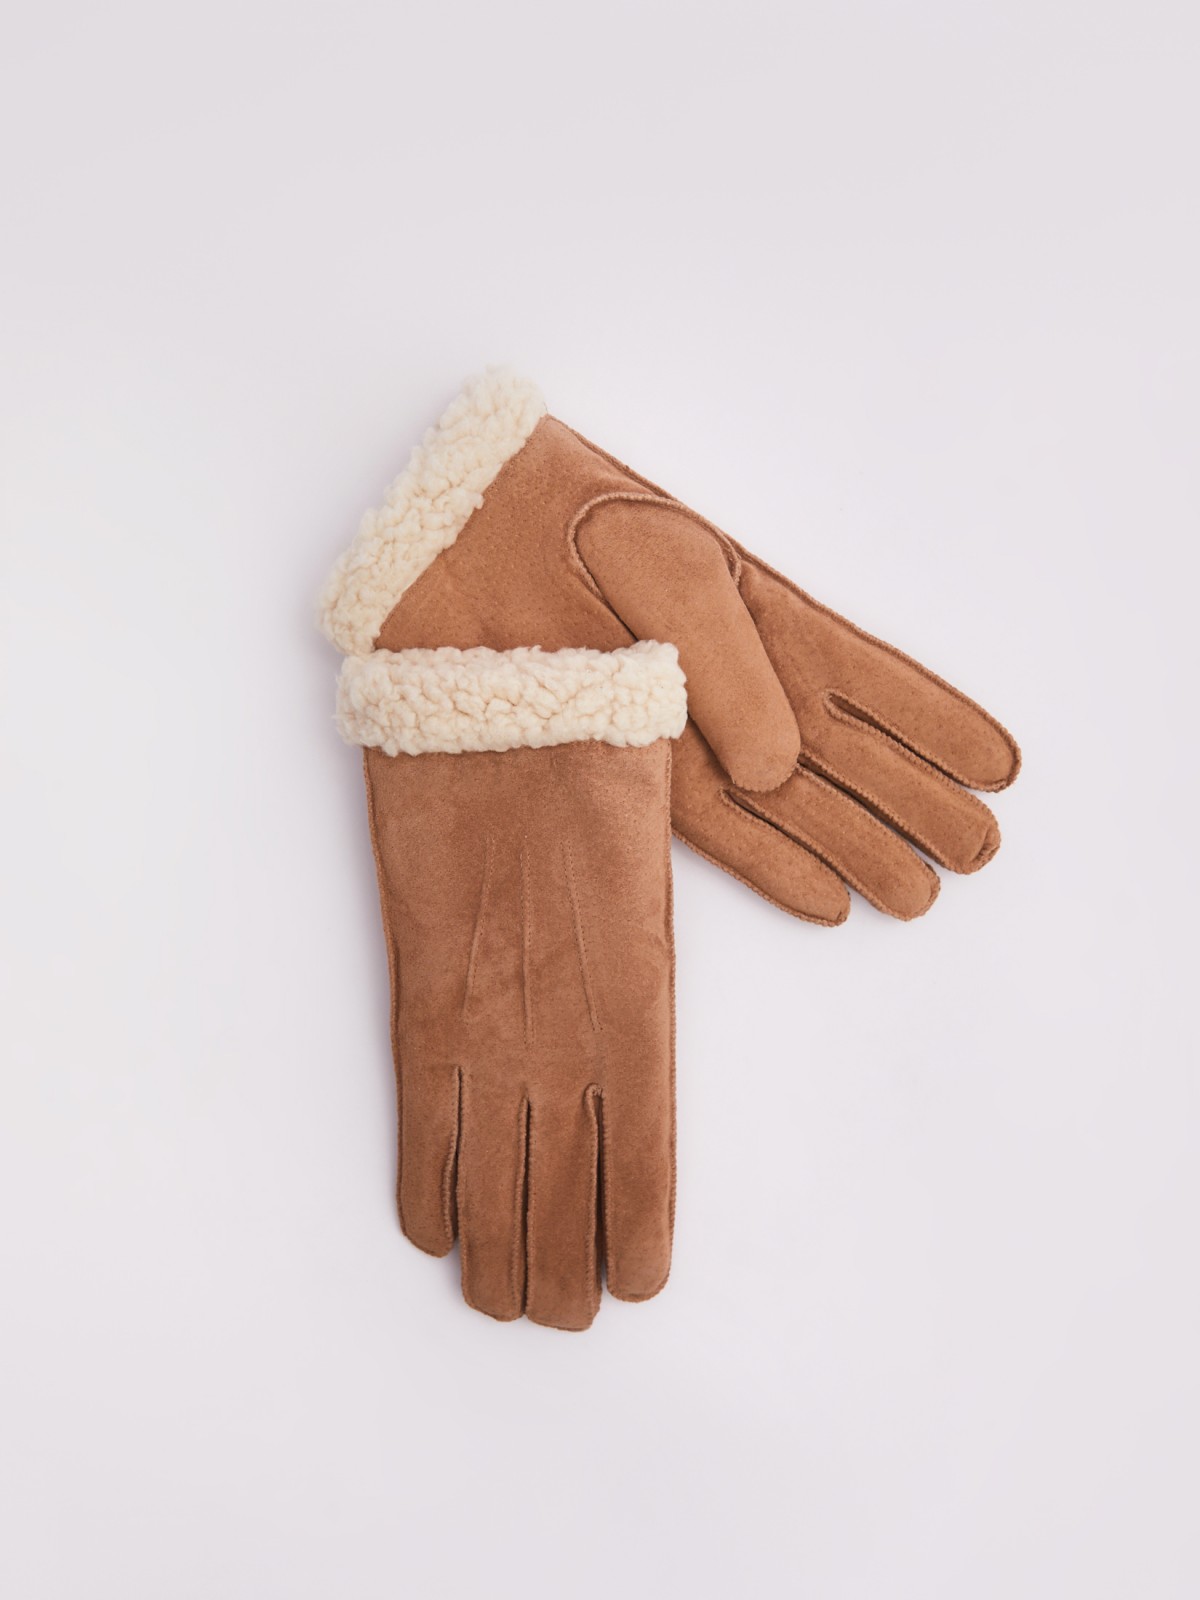 Тёплые замшевые перчатки с экомехом zolla 223429662015, цвет бежевый, размер S/M